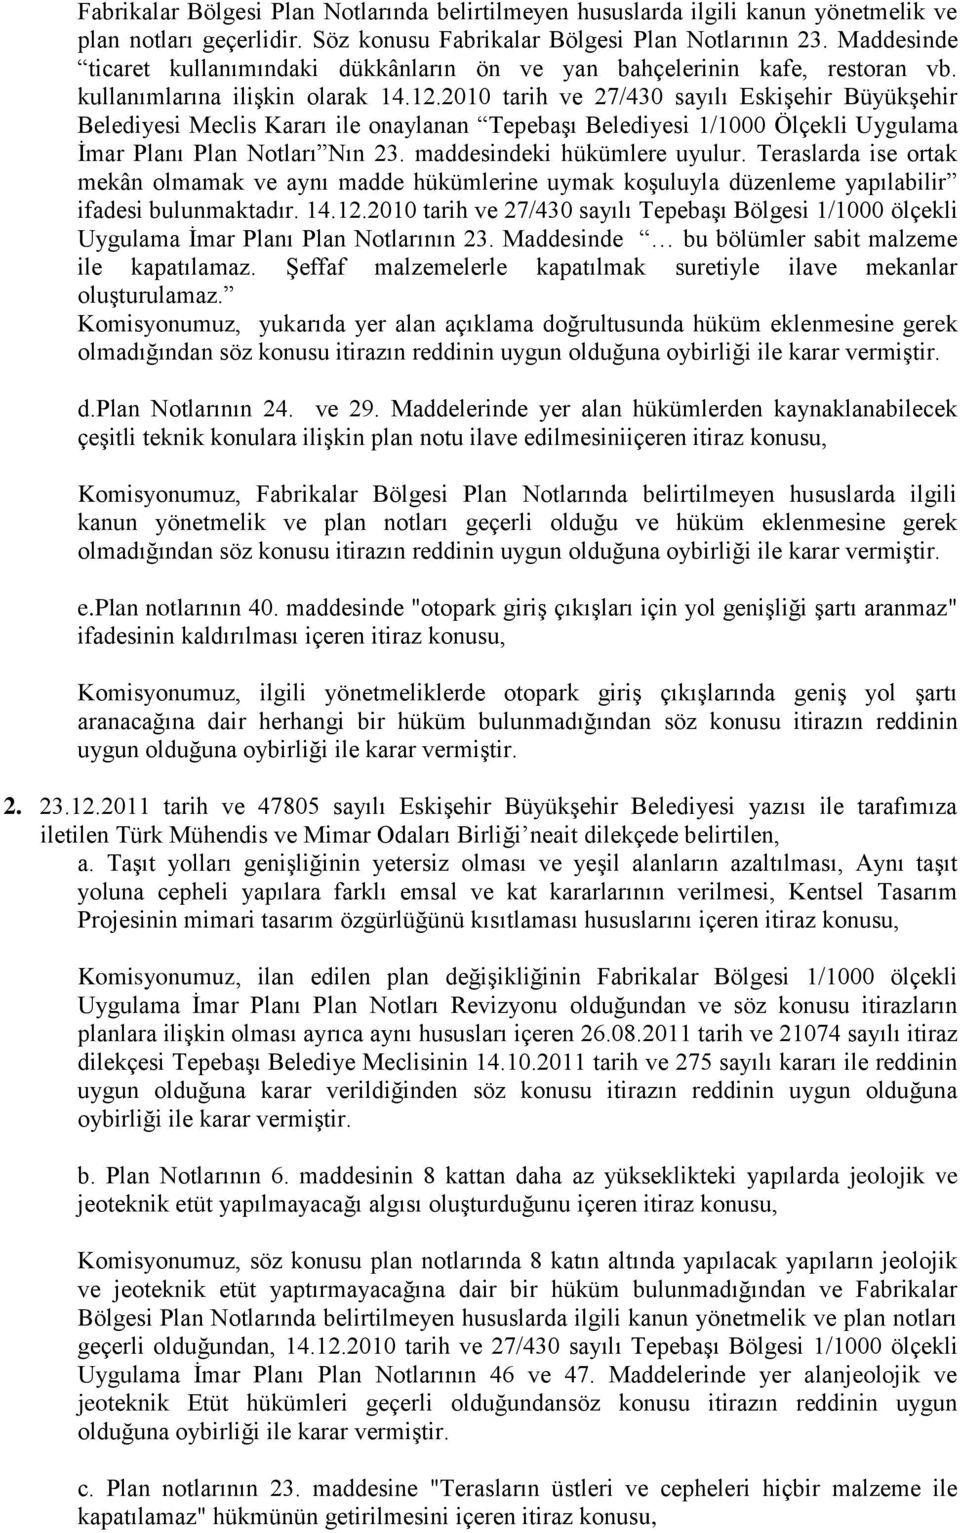 2010 tarih ve 27/430 sayılı Eskişehir Büyükşehir Belediyesi Meclis Kararı ile onaylanan Tepebaşı Belediyesi 1/1000 Ölçekli Uygulama İmar Planı Plan Notları Nın 23. maddesindeki hükümlere uyulur.